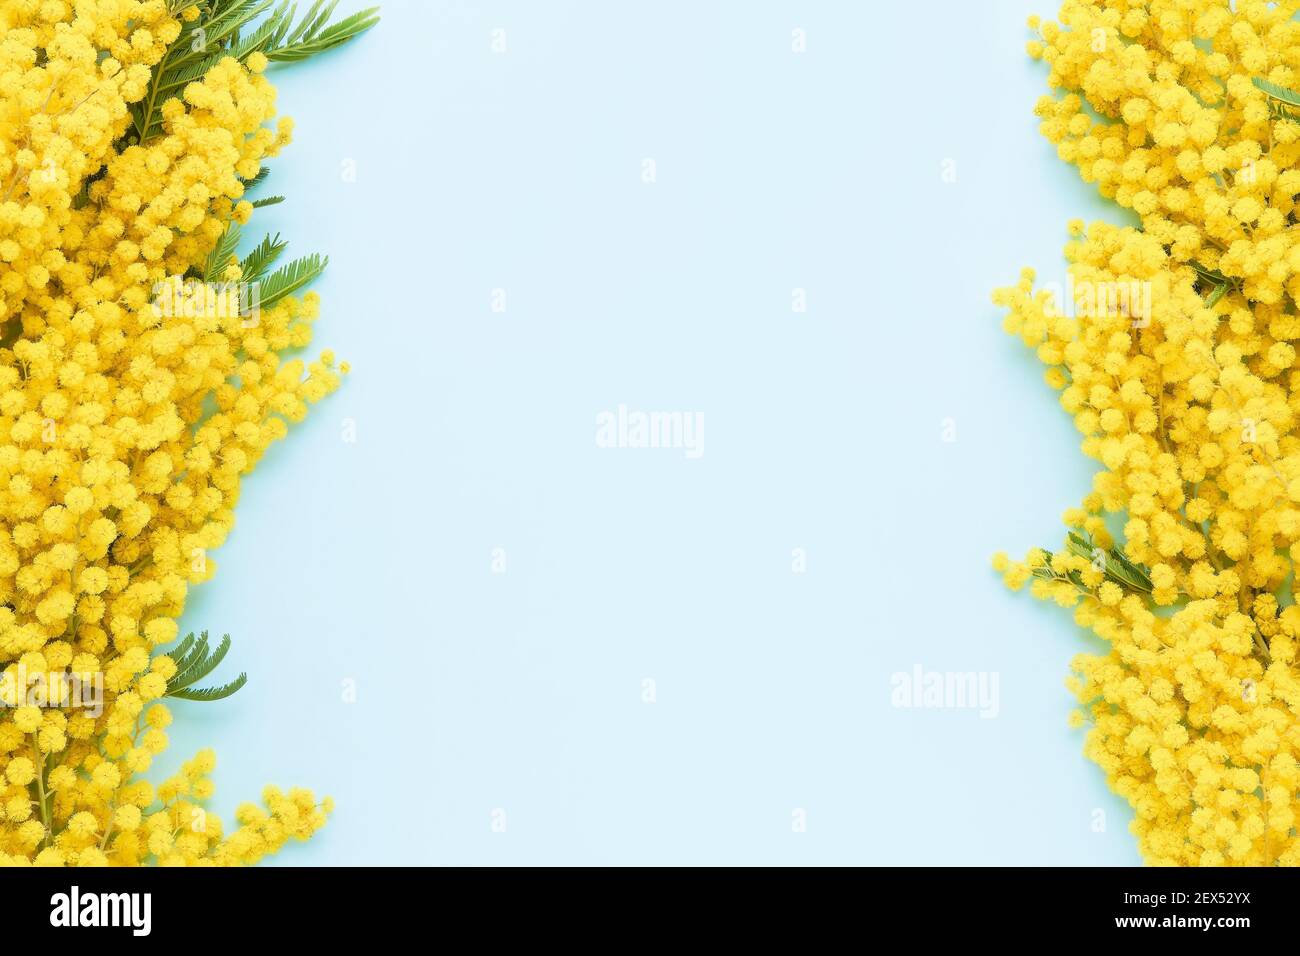 Mimosa Blumen Rahmen auf einem hellblauen Hintergrund. Ostern, Frauentag Konzept. Platz für Text kopieren, Draufsicht. Stockfoto